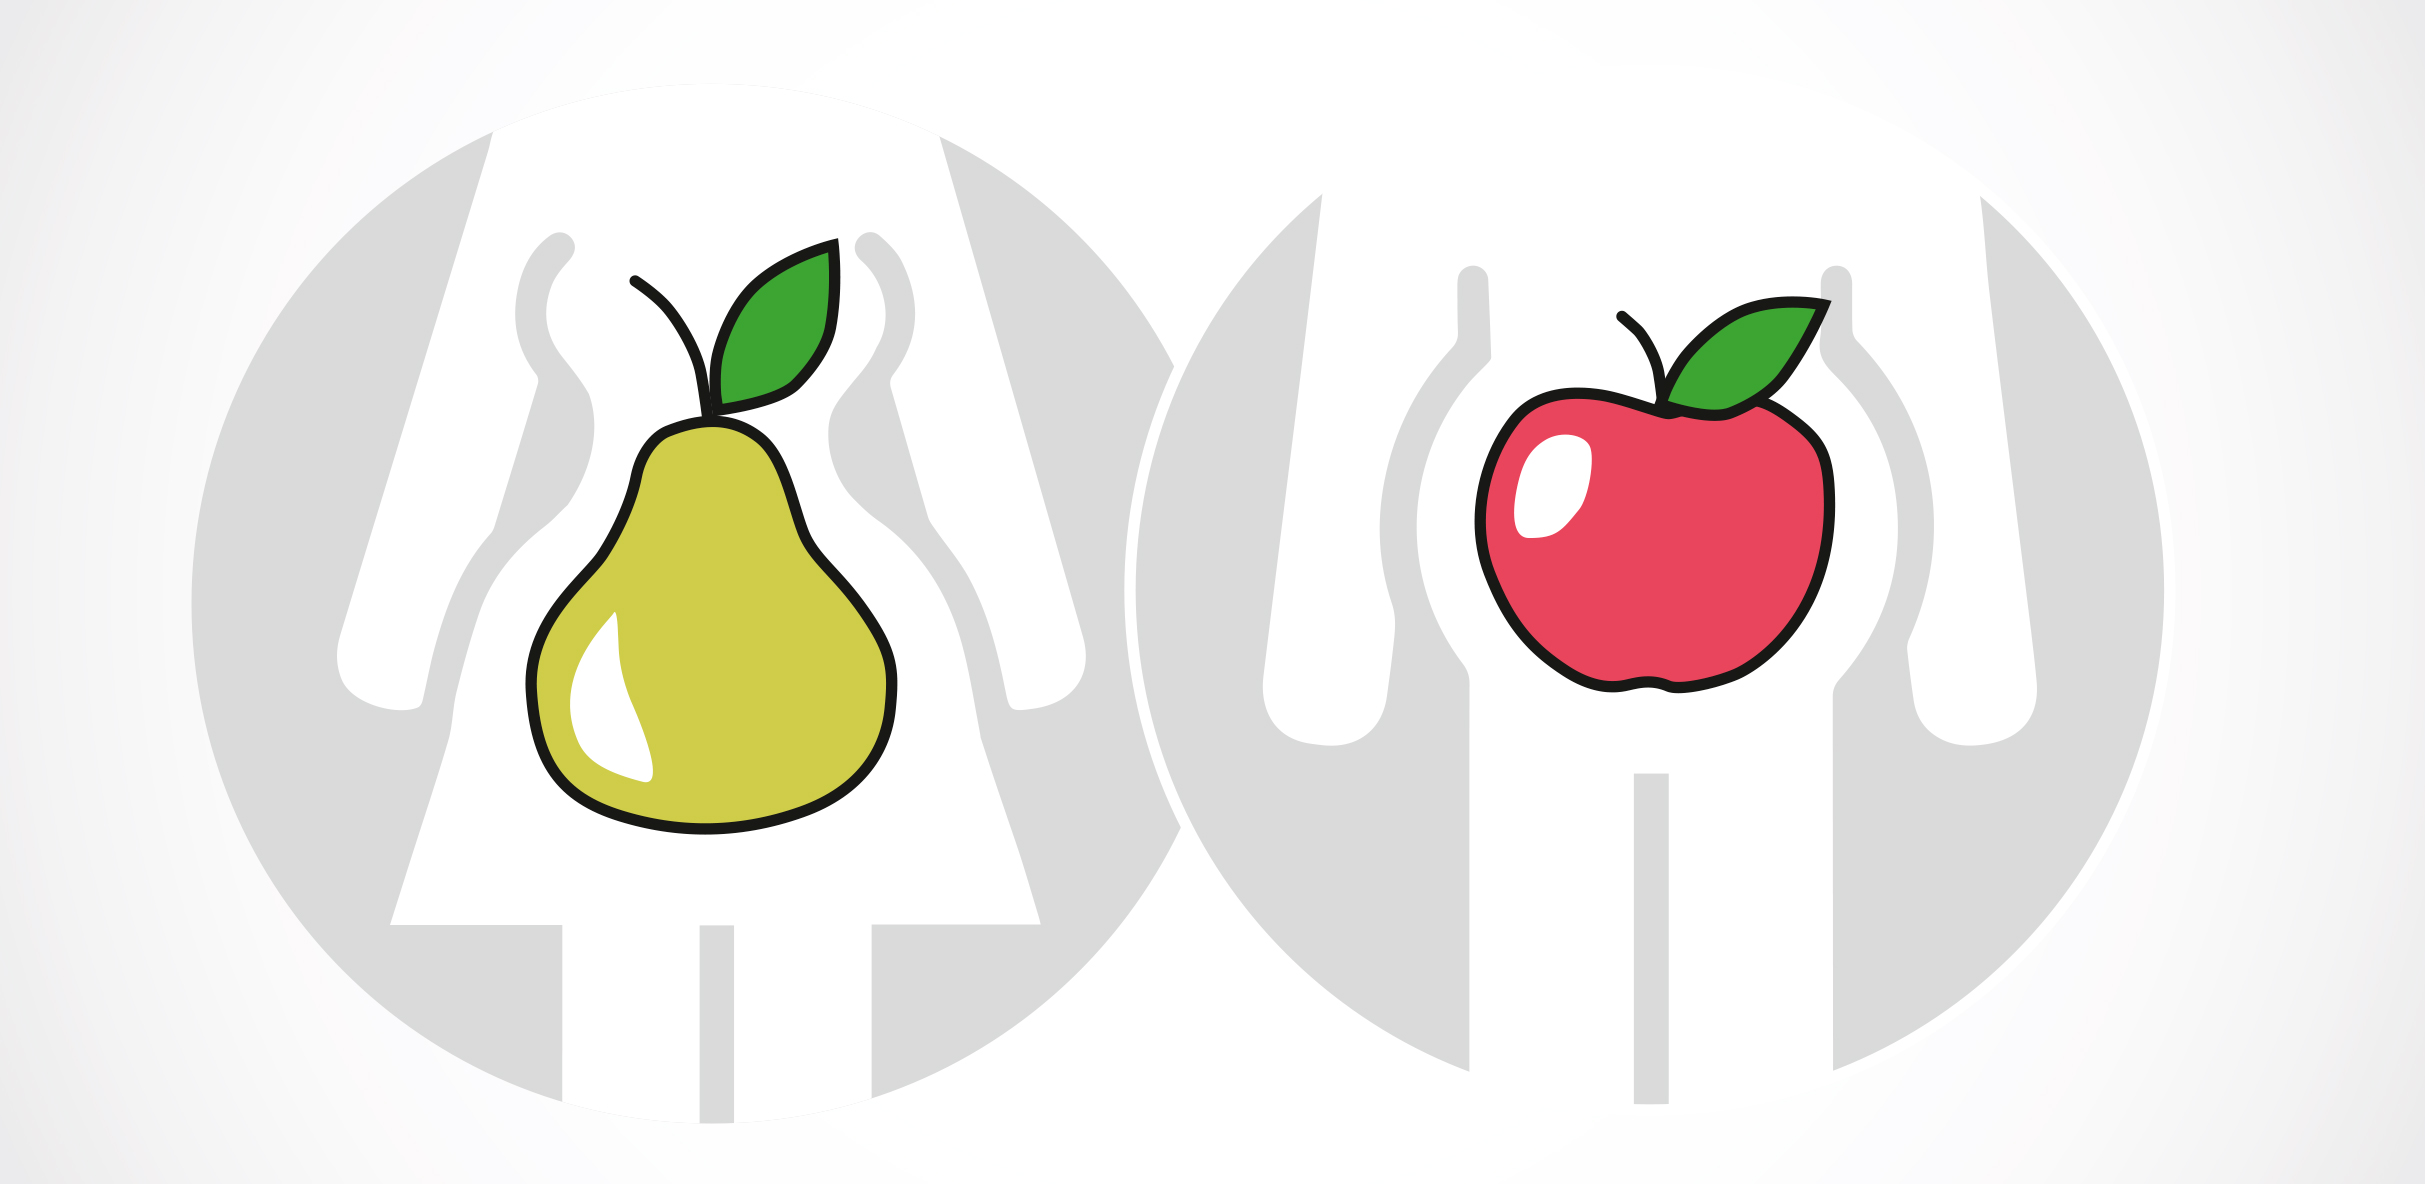 Illustration, die die Körperform von Frauen und Männern beschreibt. Grafik mit zwei sich überschneidenden, grauen Kreisen – links weibliche, weiße Silhouette mit mittig platzierter grüner Birne, rechts männliche, weiße Silhouette mit rotem Apfel